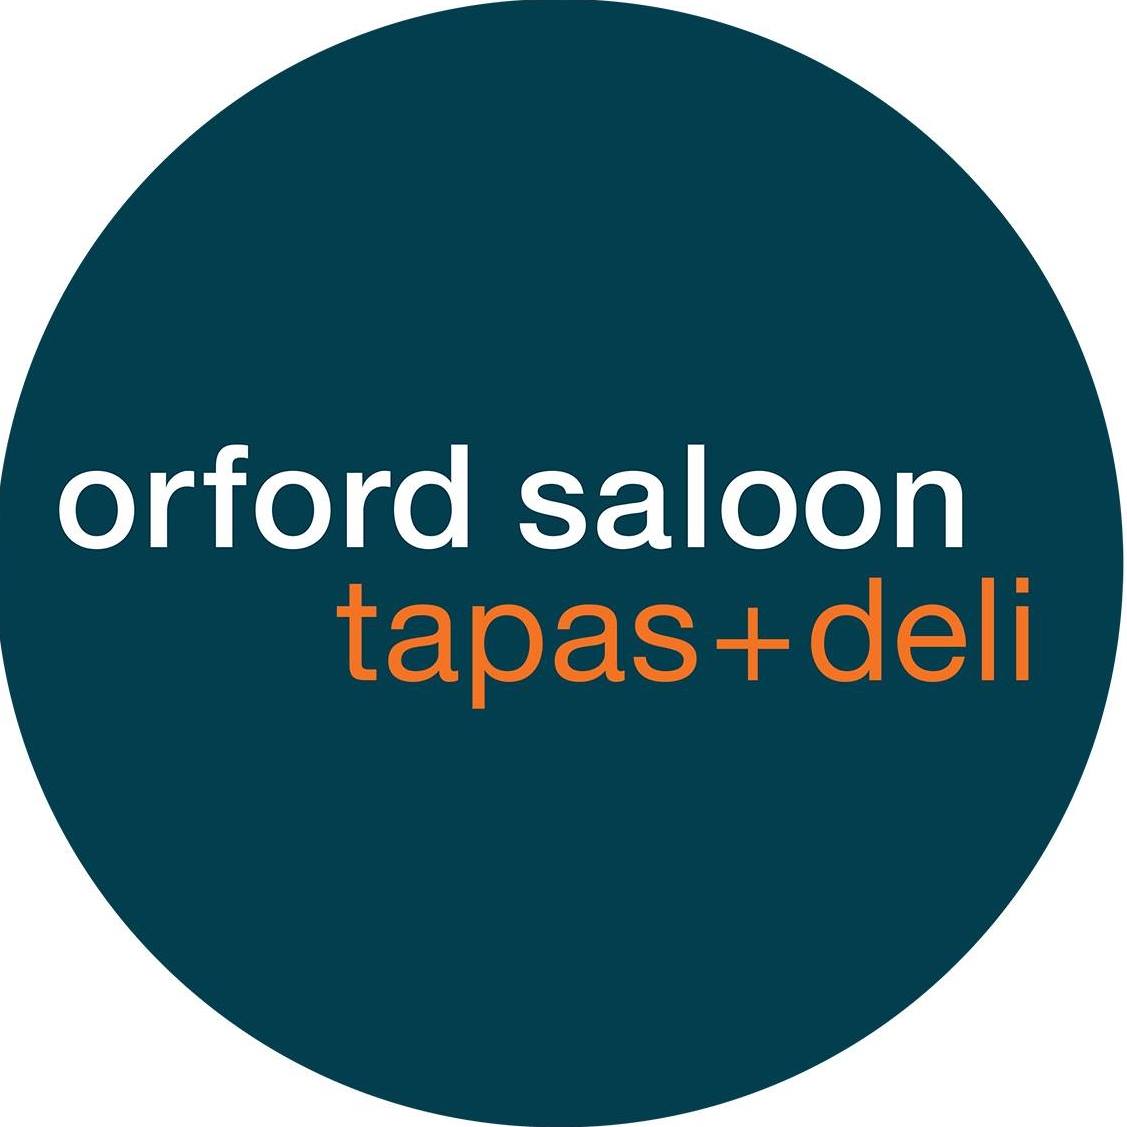 Orford Saloon & Tapas + Deli